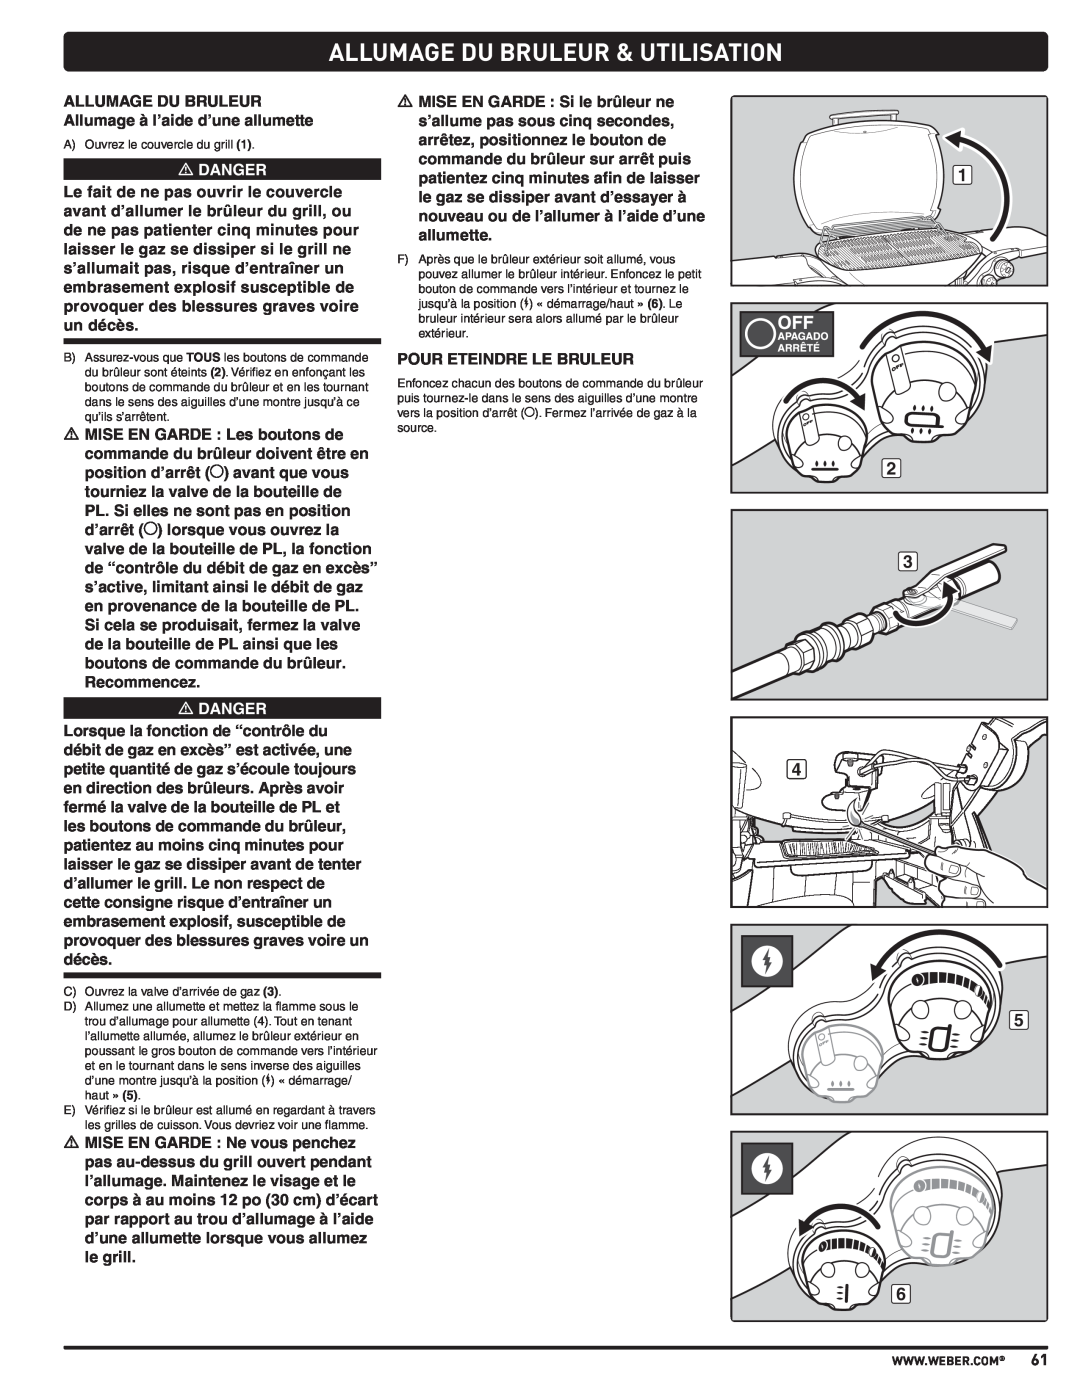 Weber 57515 manual Allumage Du Bruleur & Utilisation, m DANGER 